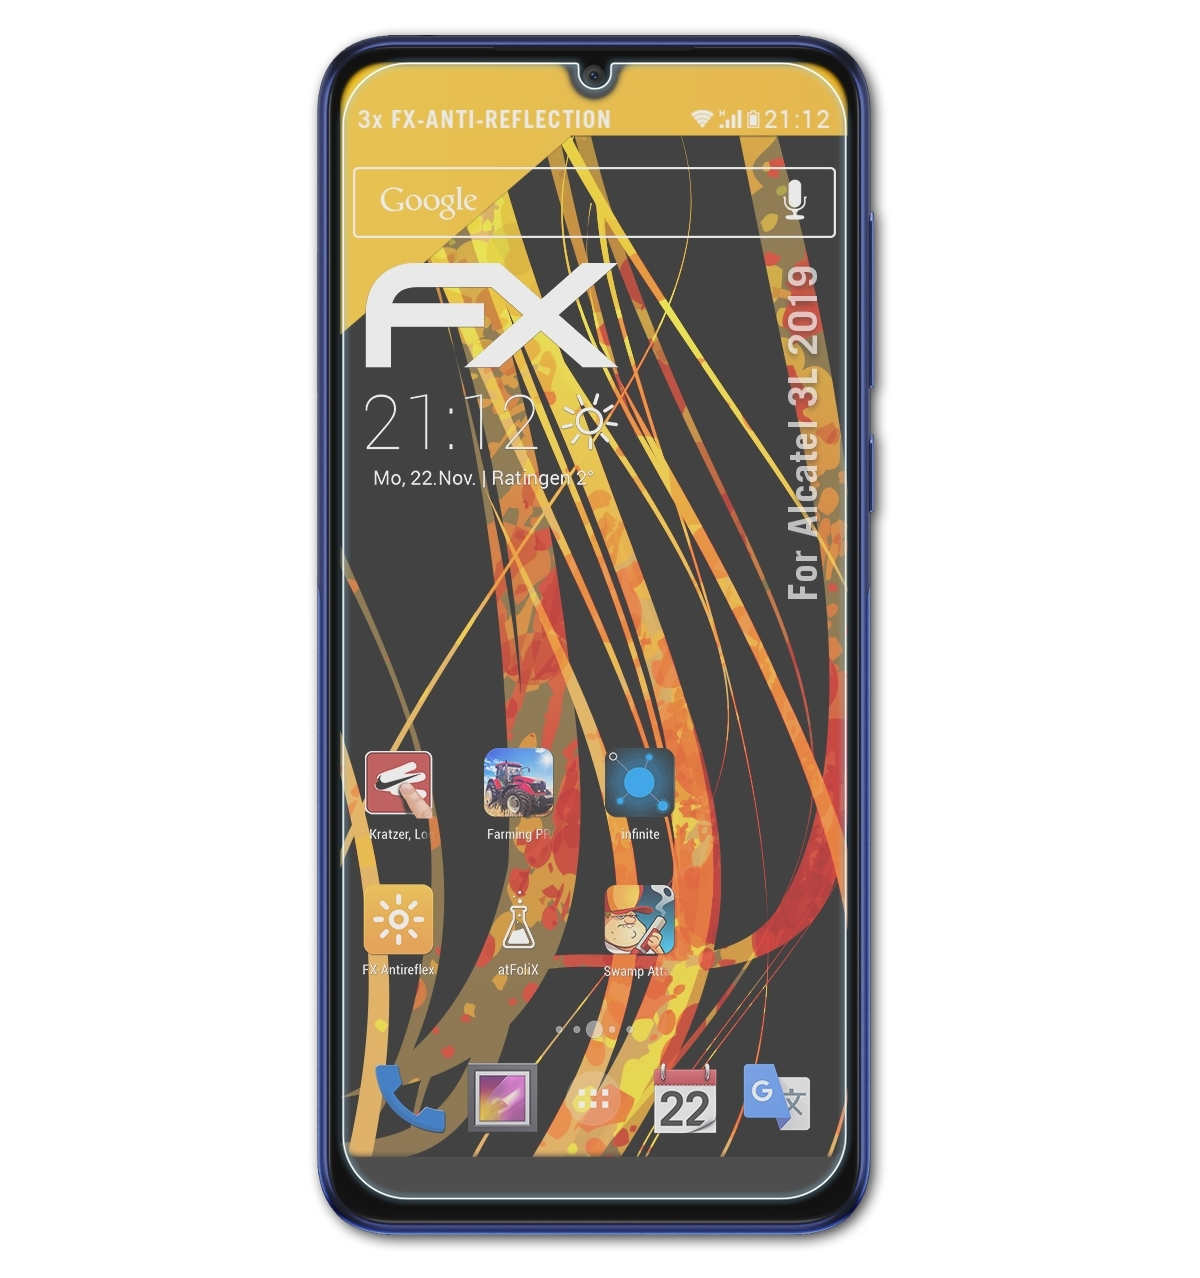 Alcatel 3L (2019)) FX-Antireflex ATFOLIX 3x Displayschutz(für